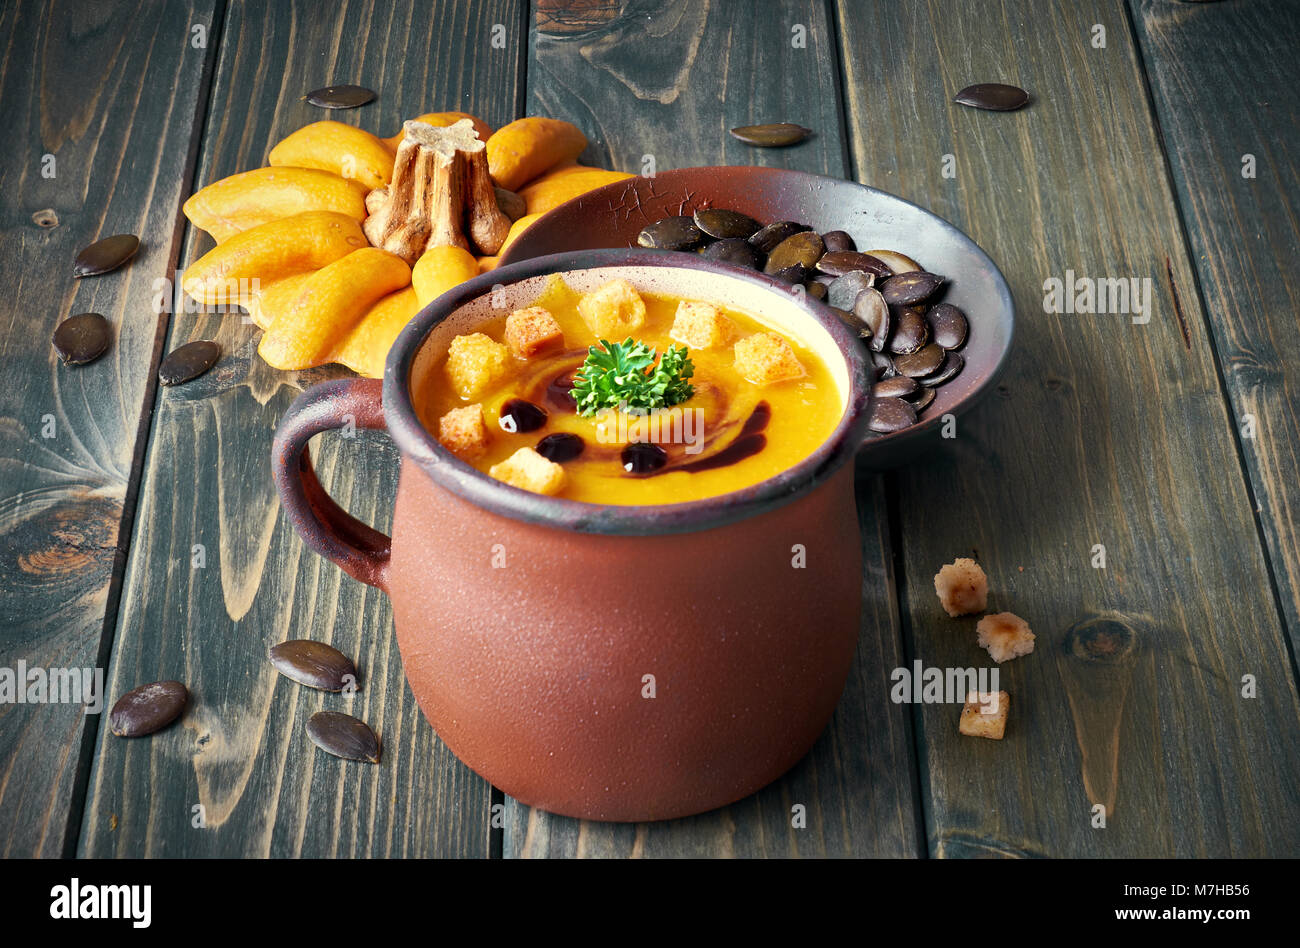 Soupe de potiron savoureux dans old enamel mug sur la table en bois rustique. La soupe est servie avec des croûtons, persil et huile de courge. Banque D'Images